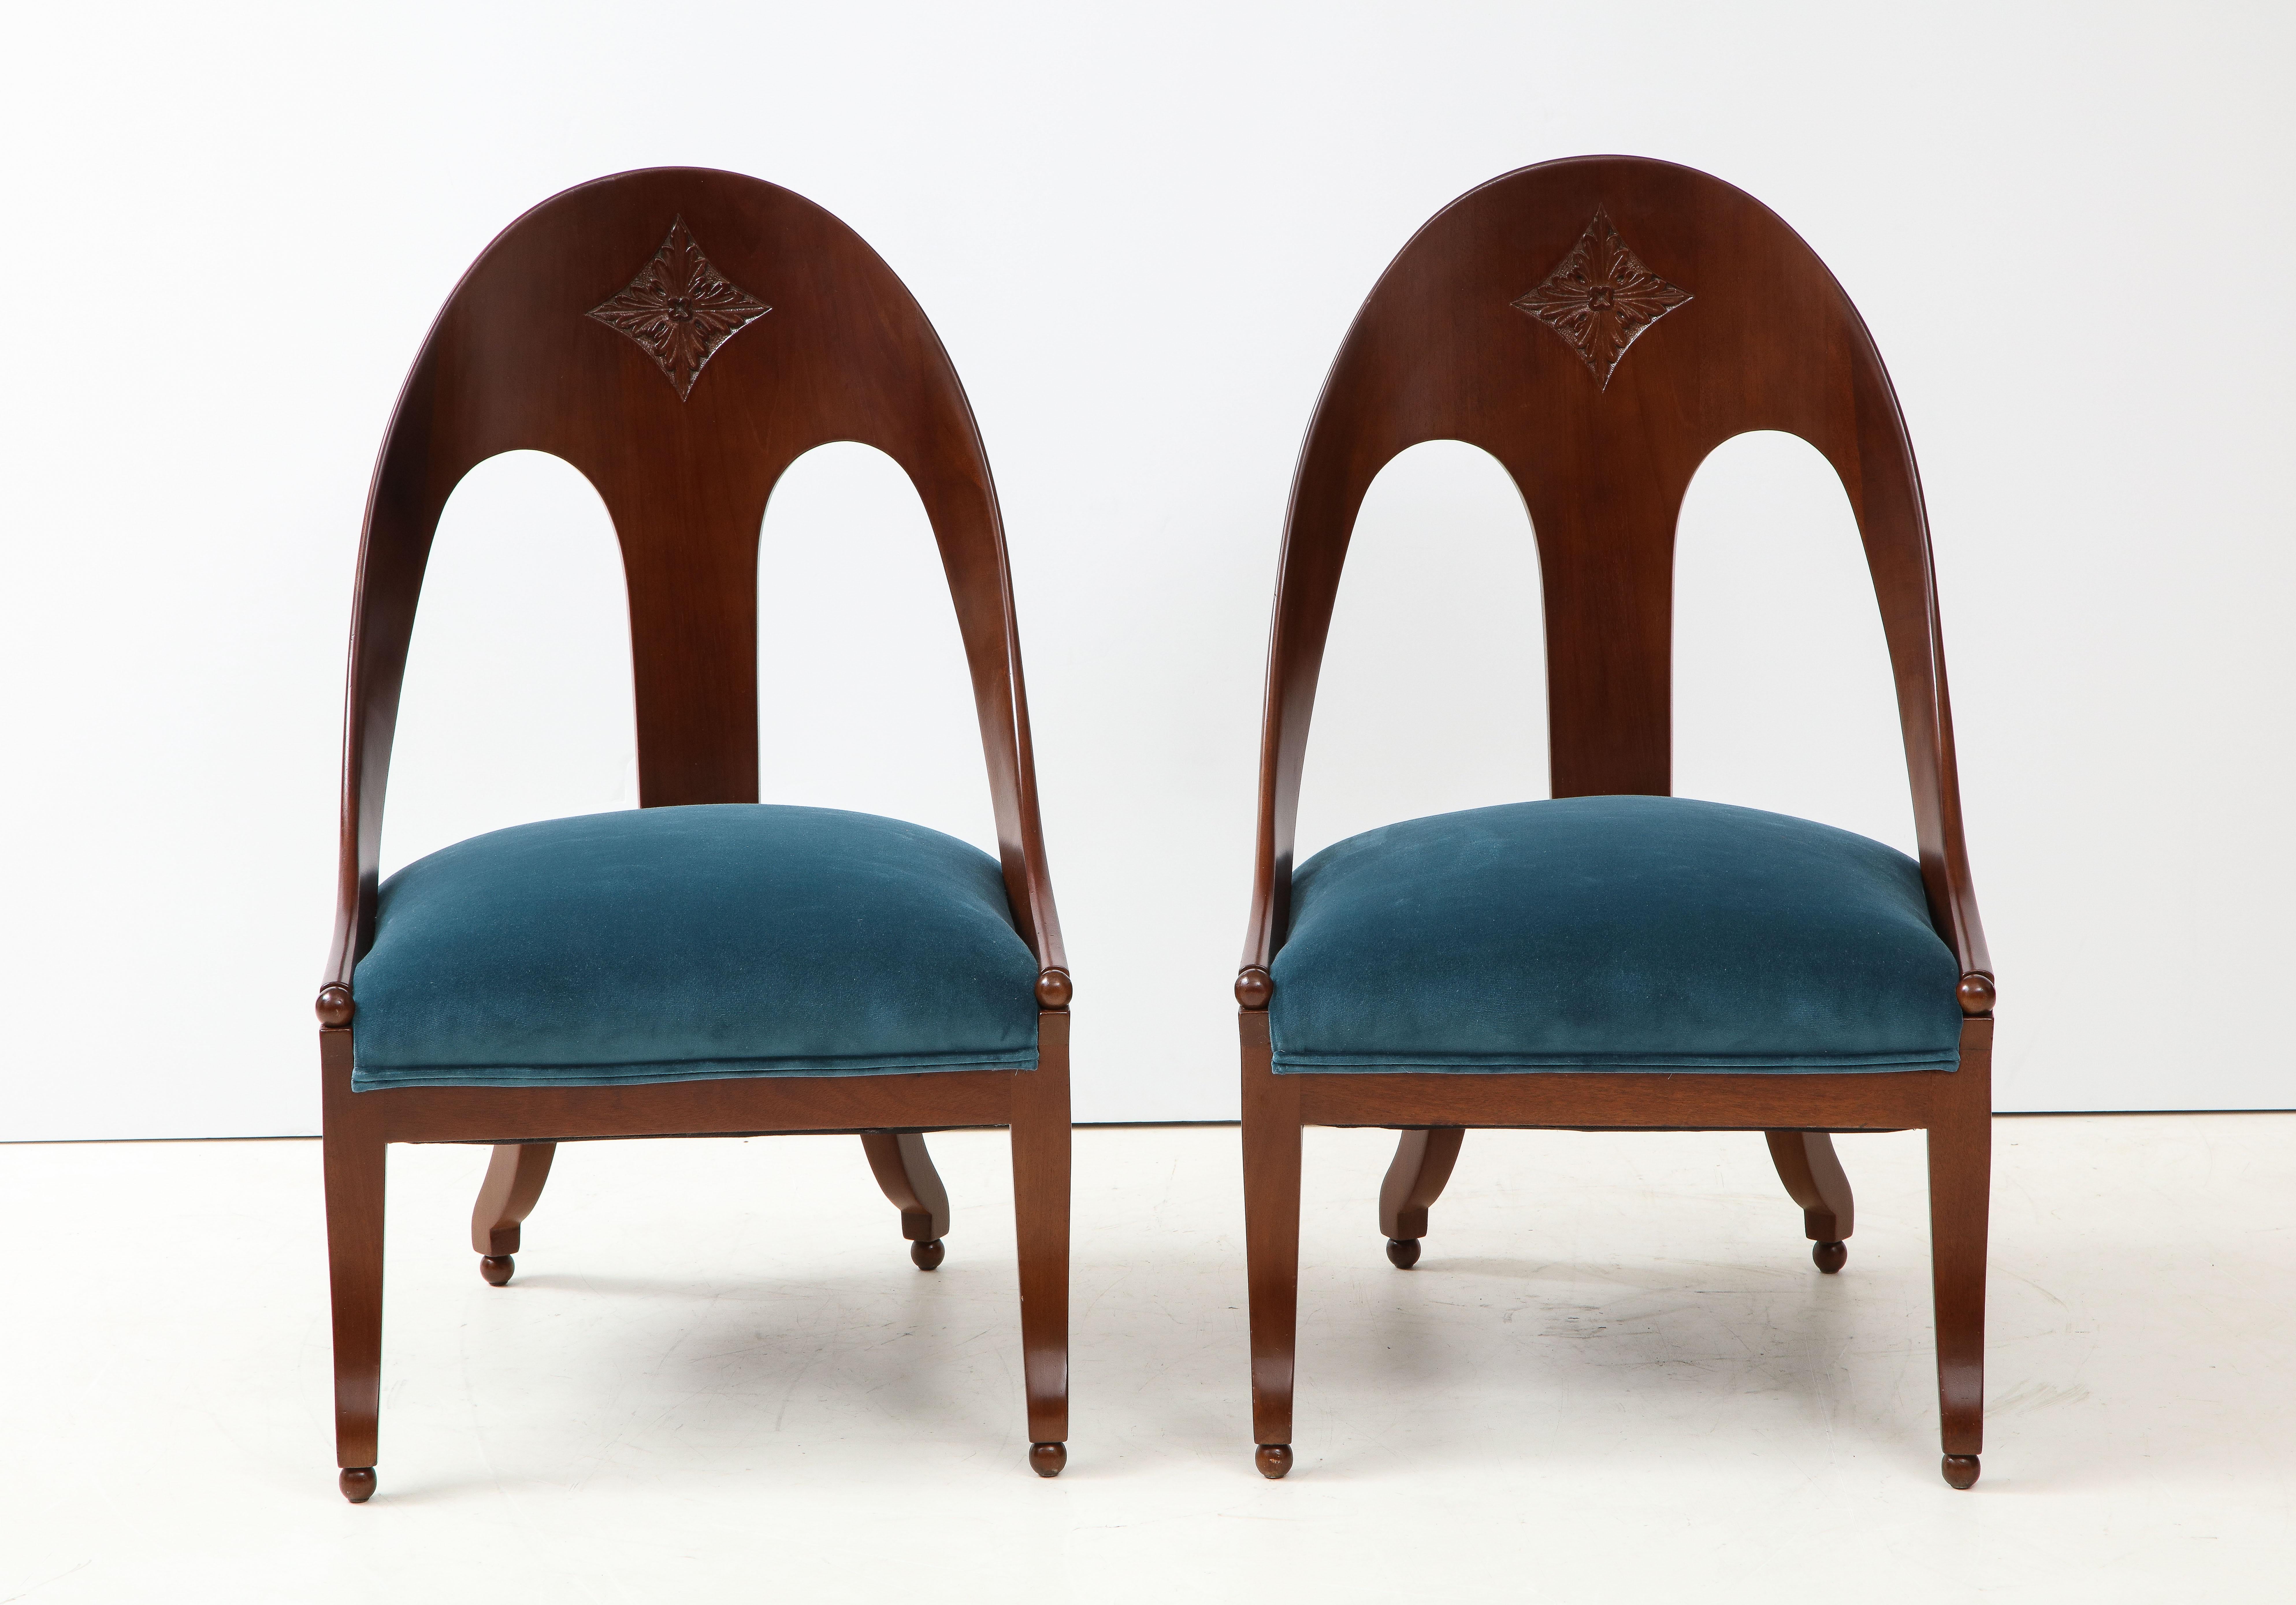 Chaises à dossier en cuillère des années 1950 conçues par Michael Taylor pour Baker, récemment retapissées en velours et légèrement restaurées avec une usure mineure du bois.